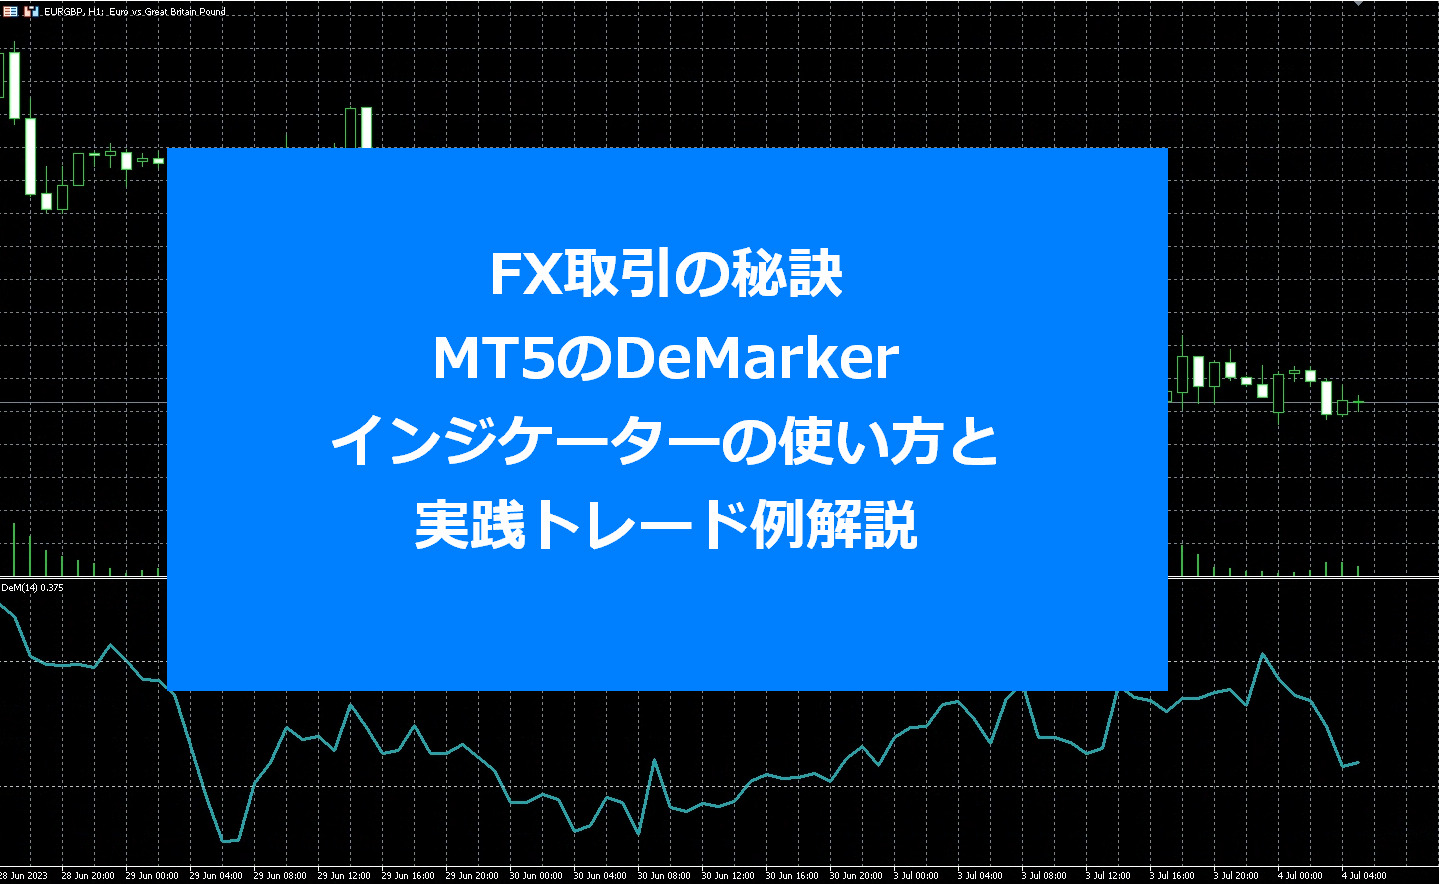 FX取引の秘訣: MT5のDeMarker（デマーカー）インジケーターの使い方と実践トレード例解説